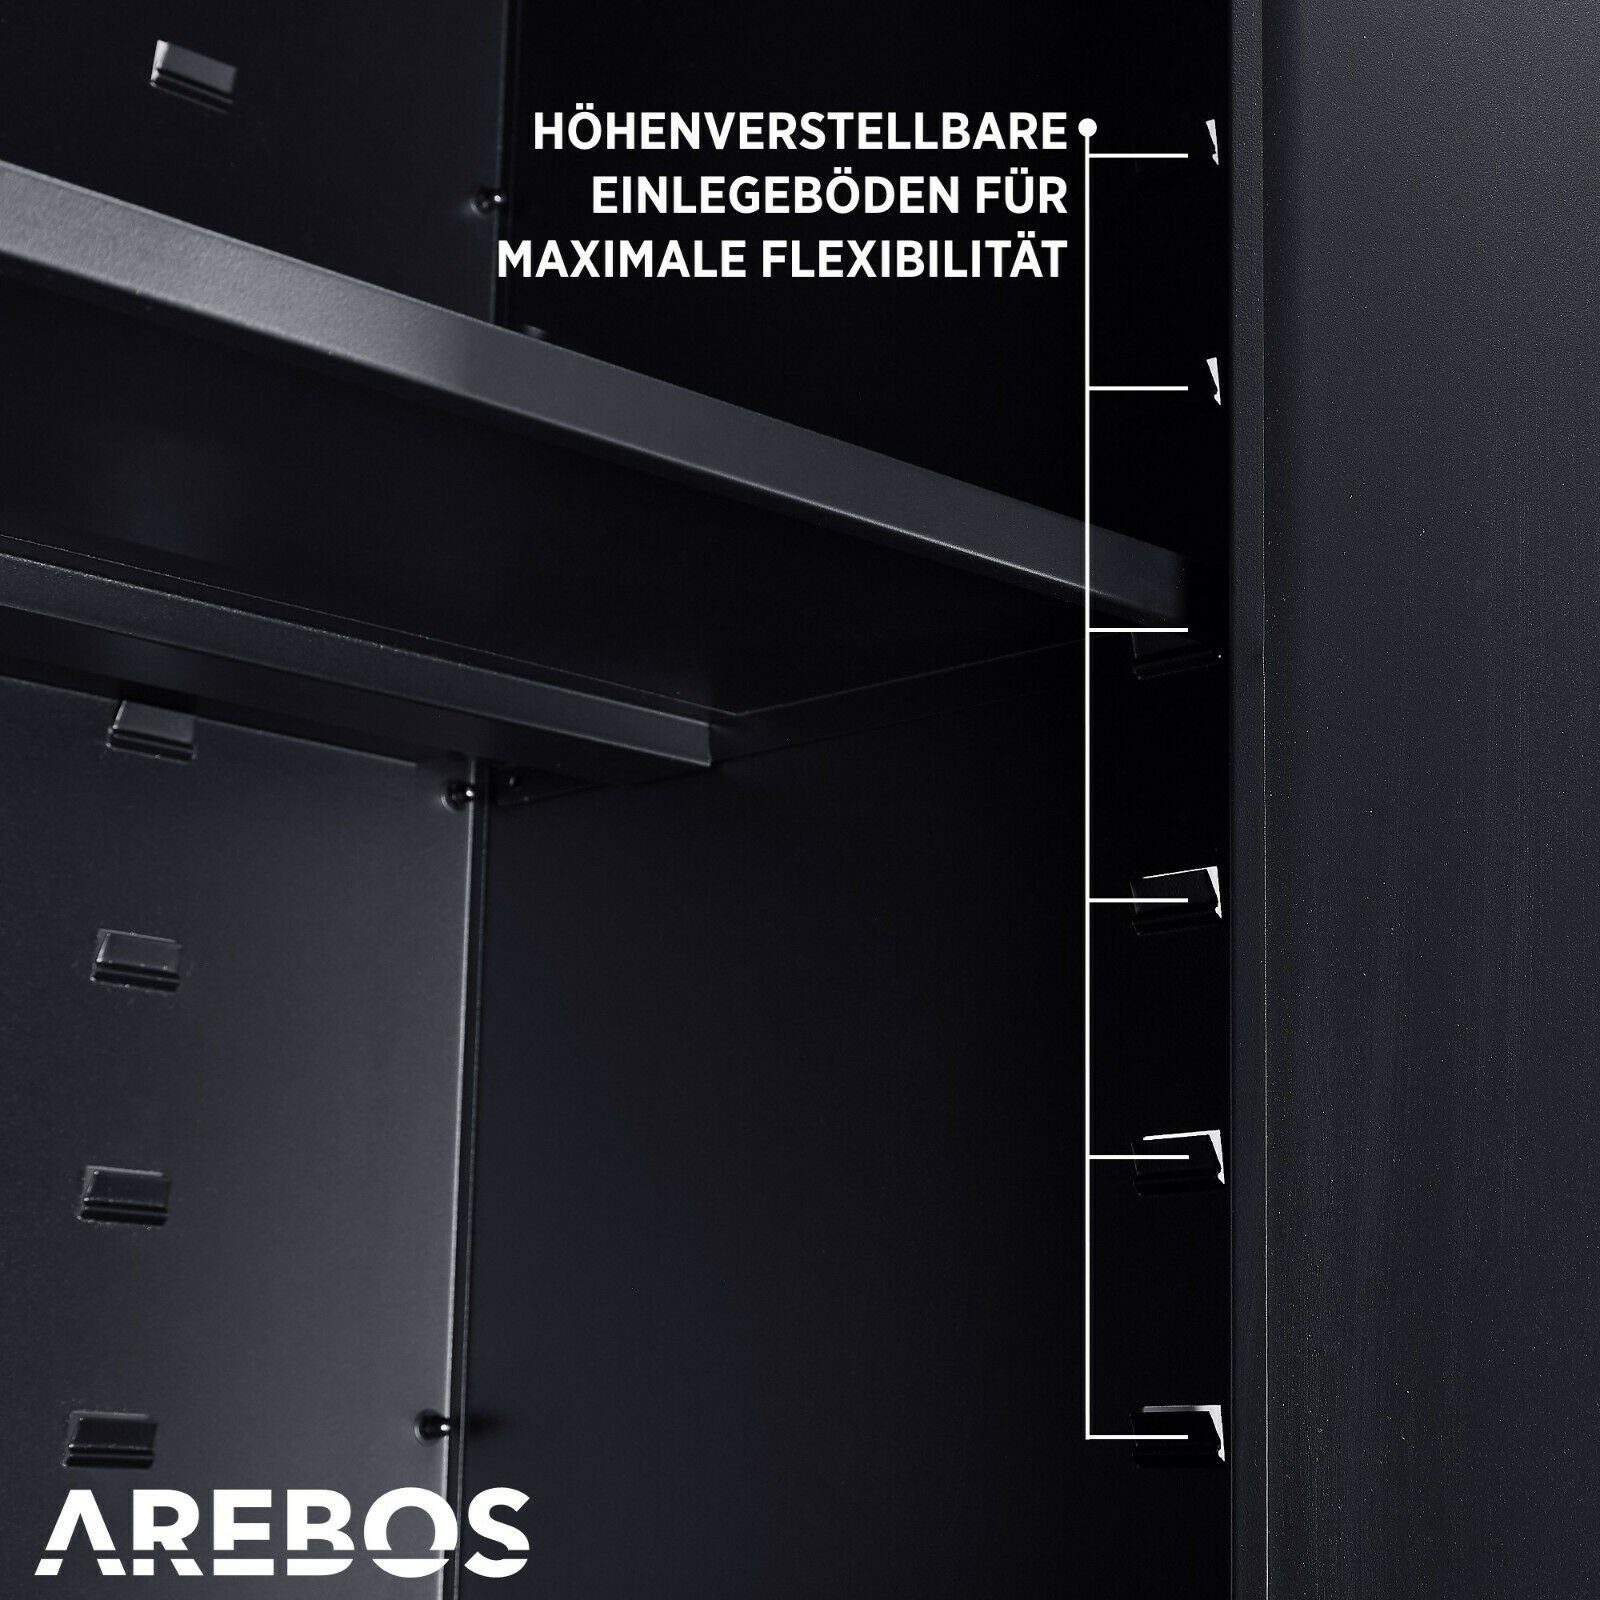 Arebos Aktenschrank 4 Türen, Einlegeböden Höhenverstellbaren inkl. Schwarz schwarz Schlüssel Sicherheitszylinderschloss (Set, Aktenschrank) 